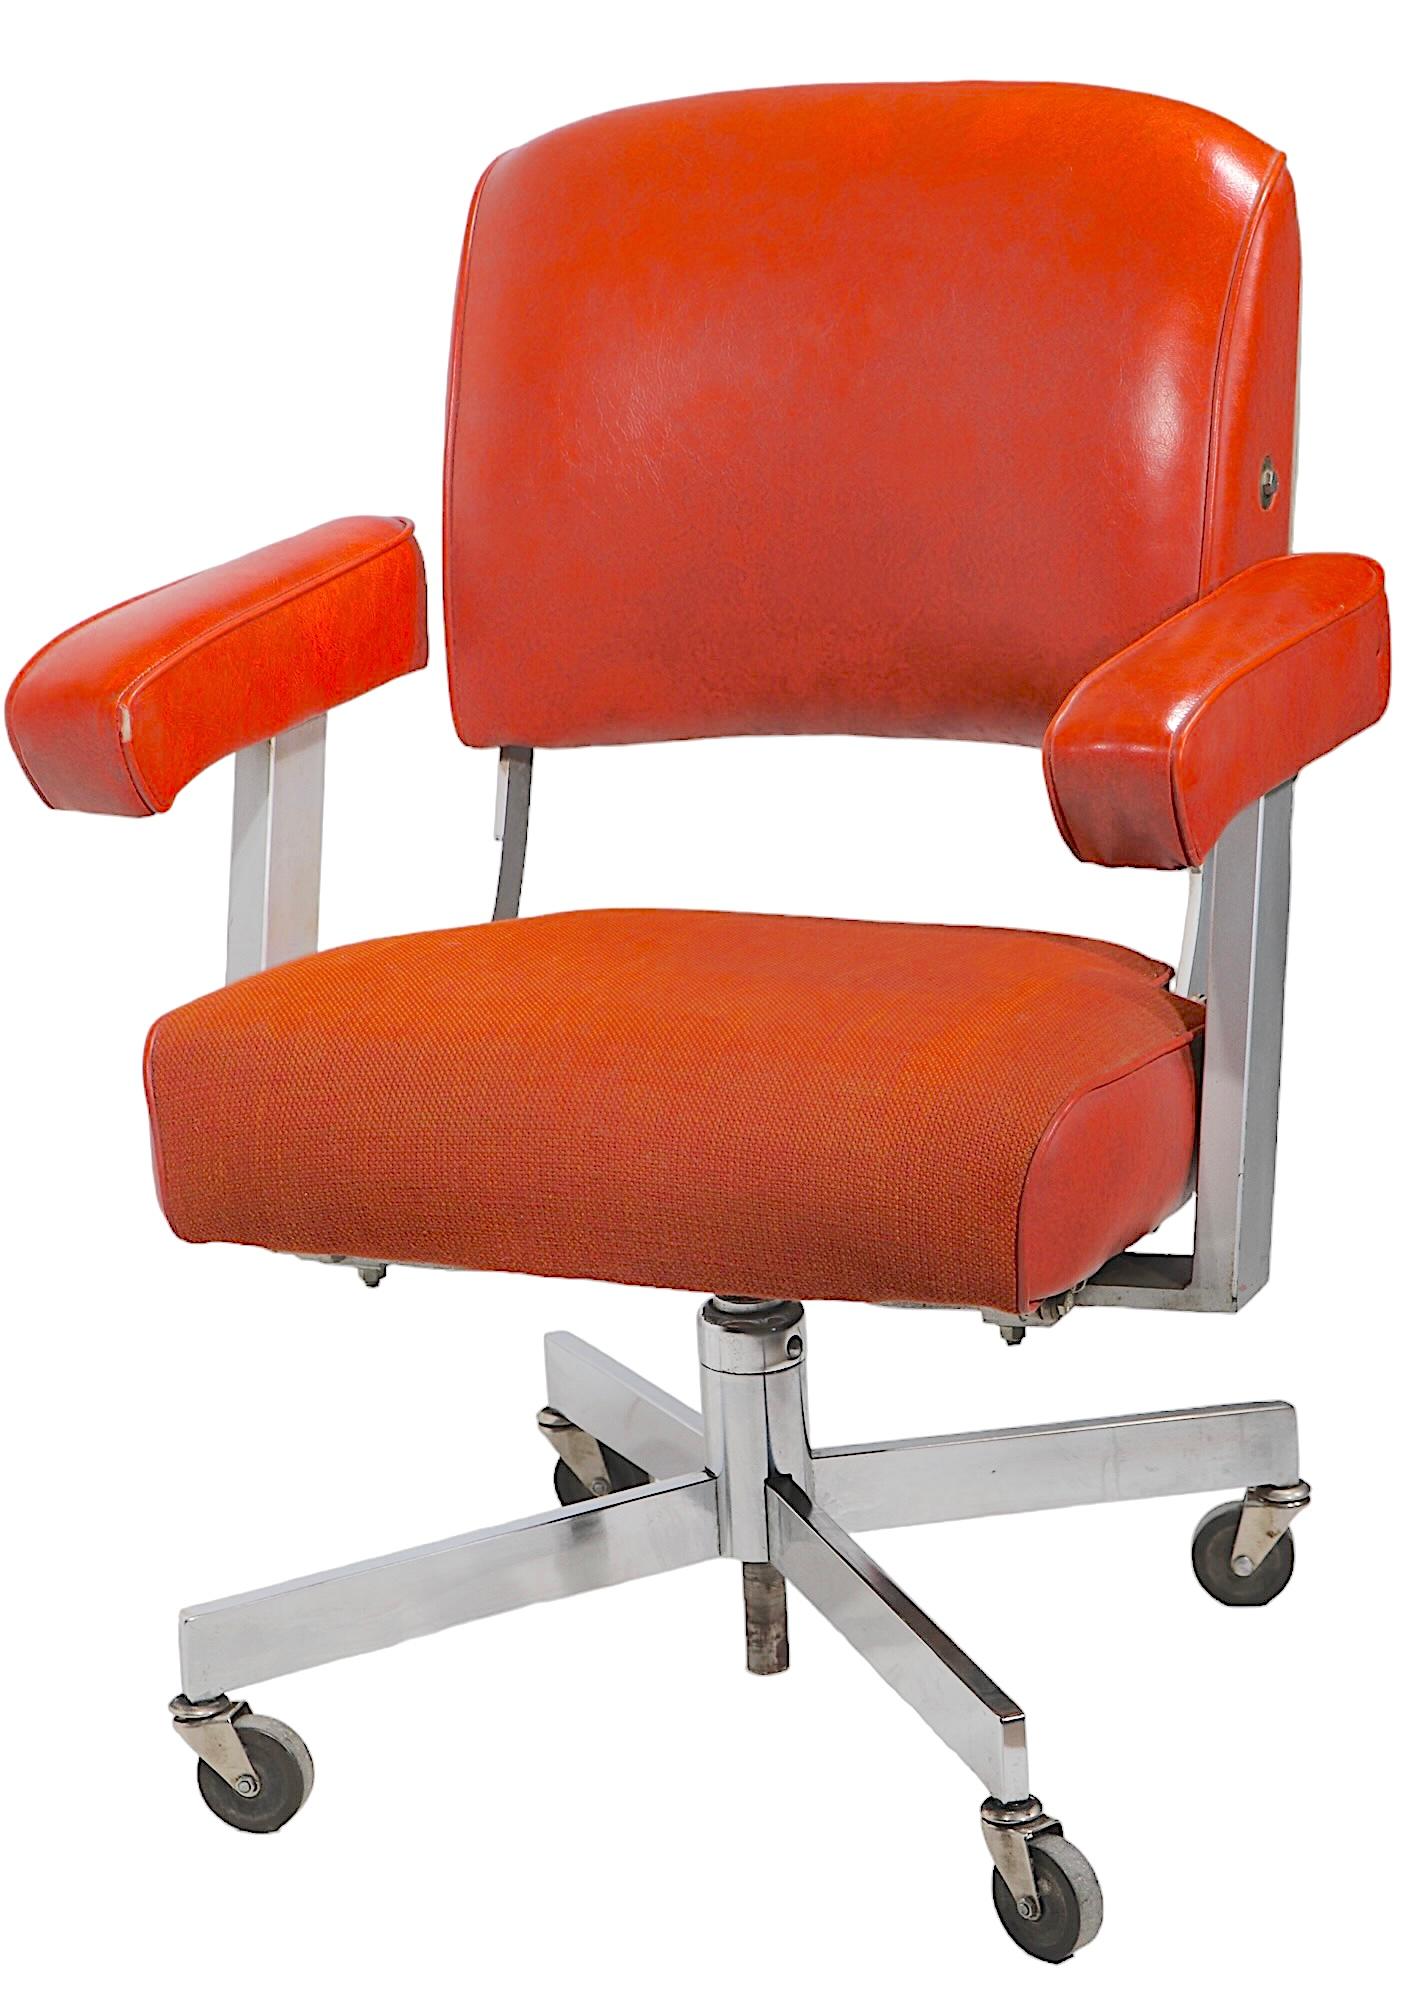 Außergewöhnliche Industrial, Mid Century  Bürodrehstuhl, Schreibtischstuhl by The  DoMore Chair Unternehmen. Der Stuhl verfügt über ein verchromtes Untergestell mit Rollenfüßen, einen Sitz aus dickem Tweed und Vinyl, gepolsterte Armlehnen und eine